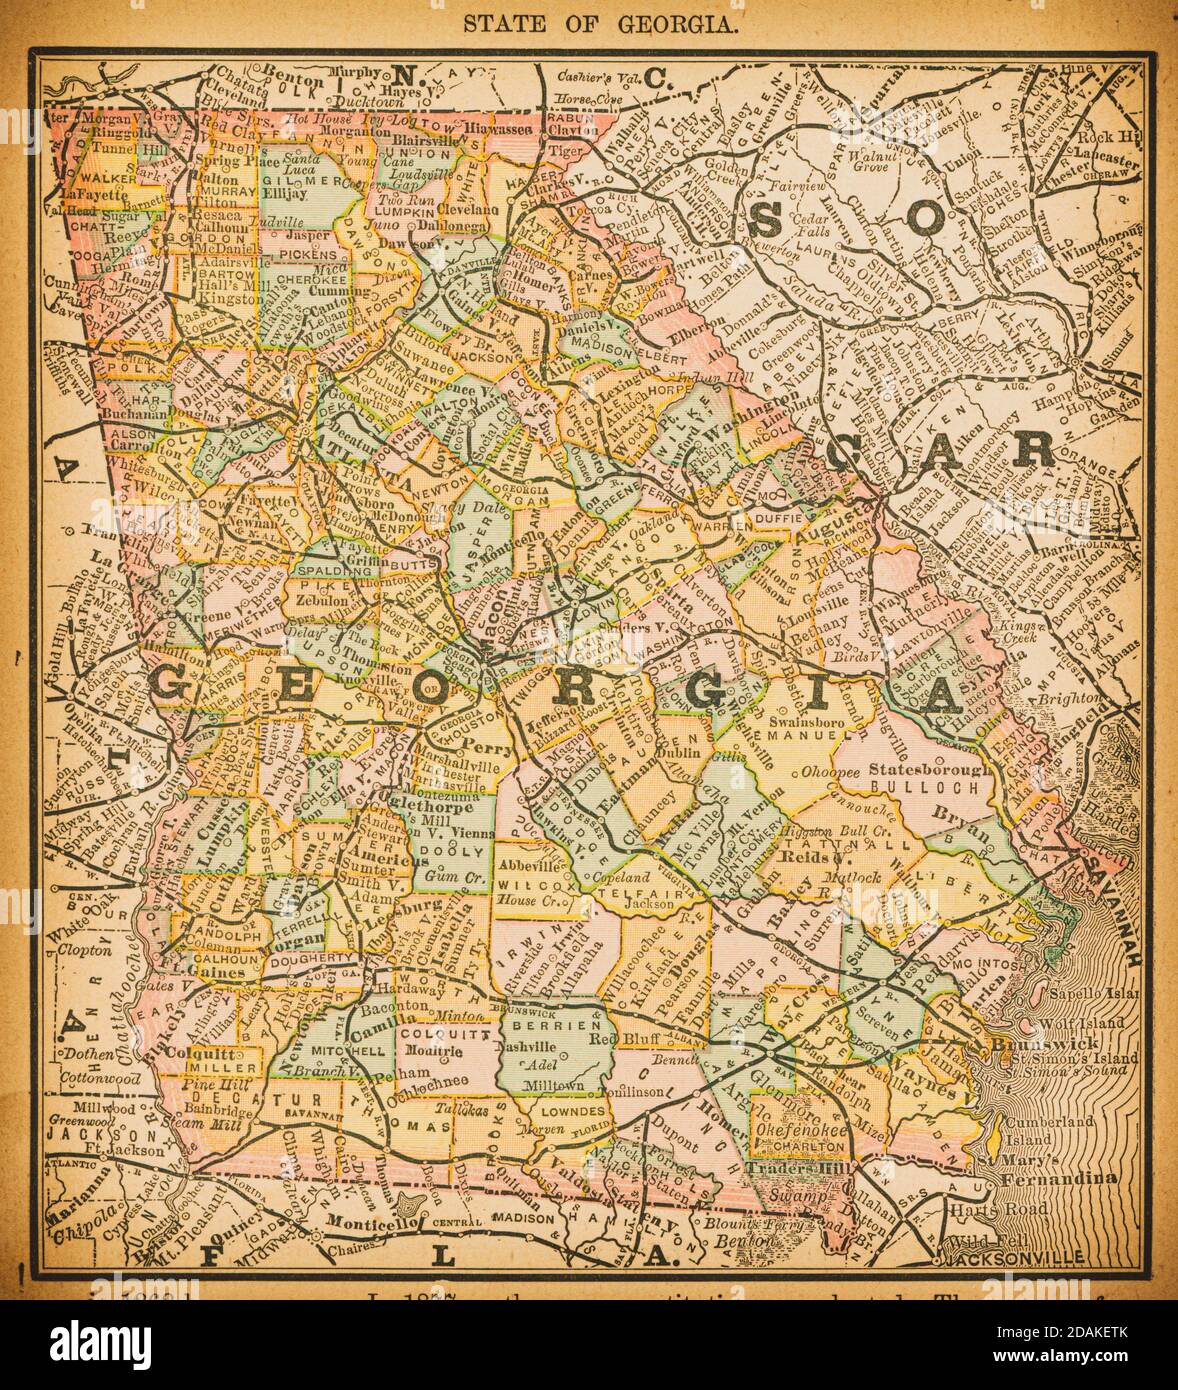 Mapa del siglo XIX del Estado de Georgia. Publicado en Nuevo Atlas del dólar de los Estados Unidos y dominio de Canadá. (Rand McNally & Co's, Chicago, 1884). Foto de stock